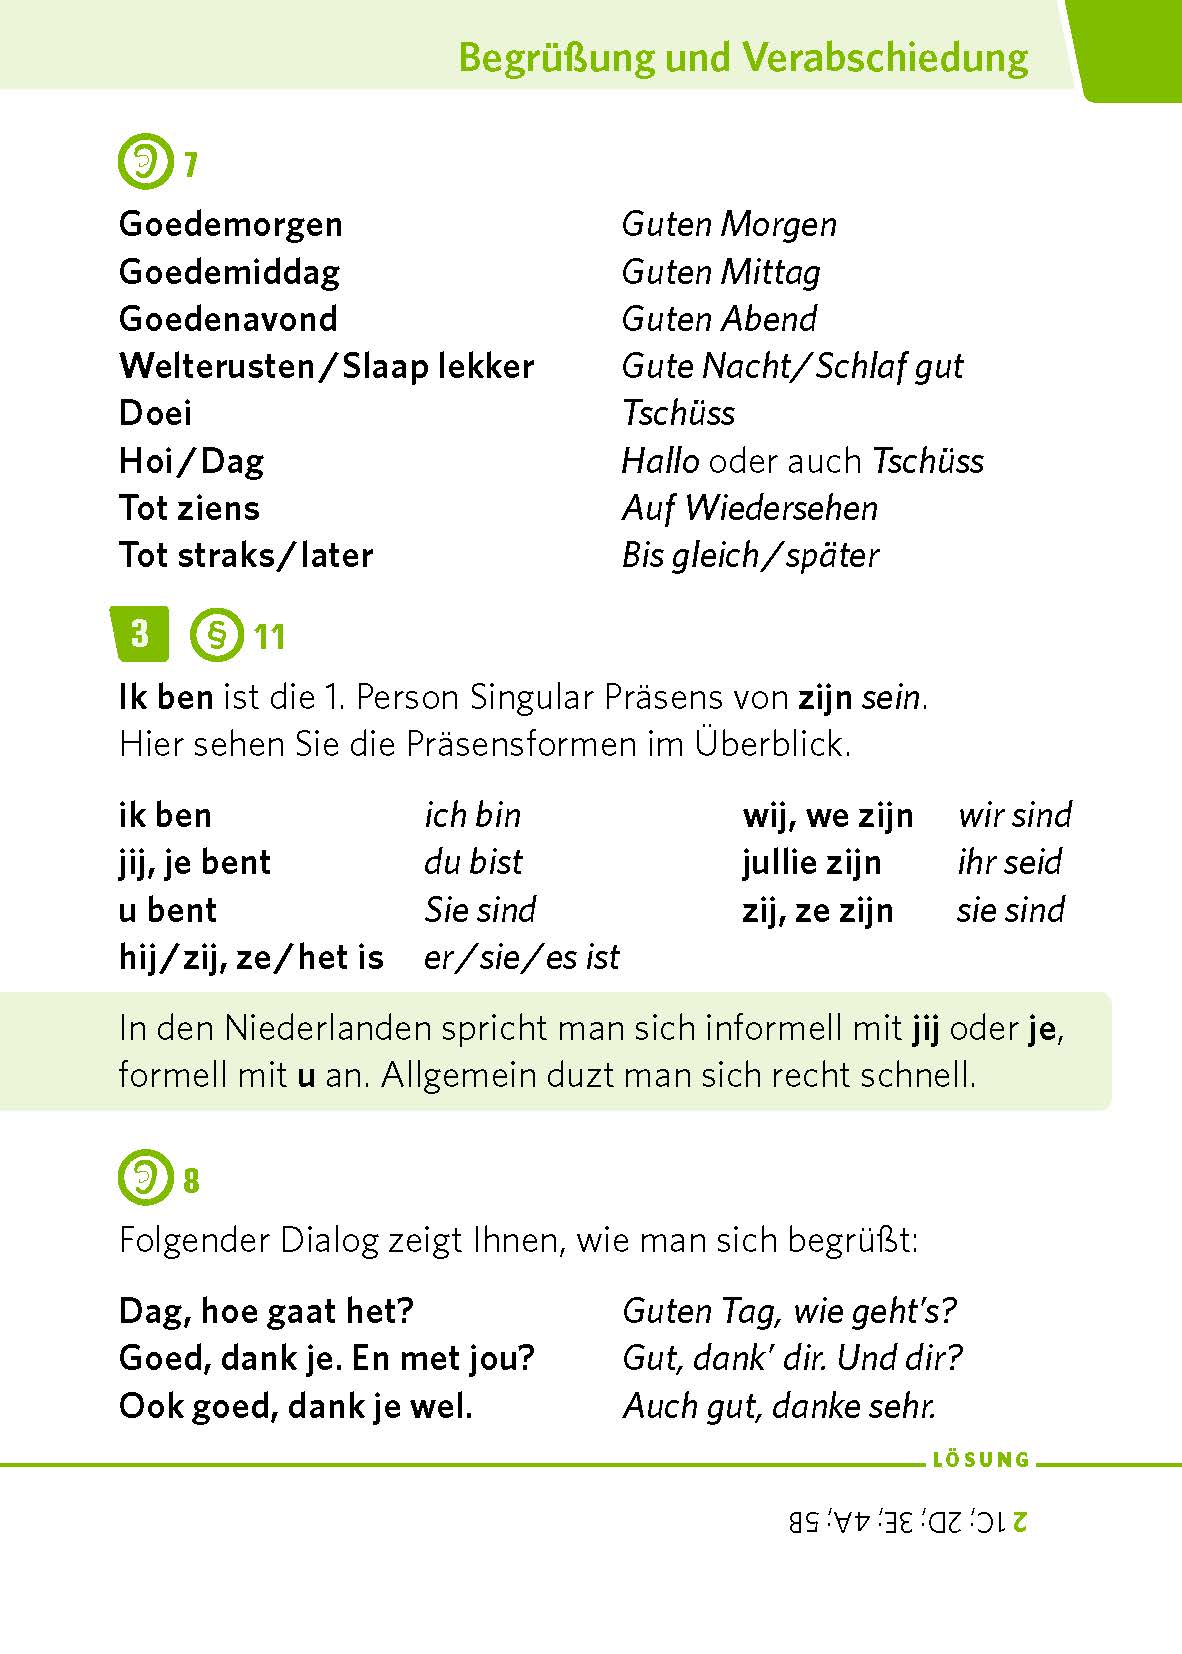 PONS Pocket-Sprachkurs Niederländisch